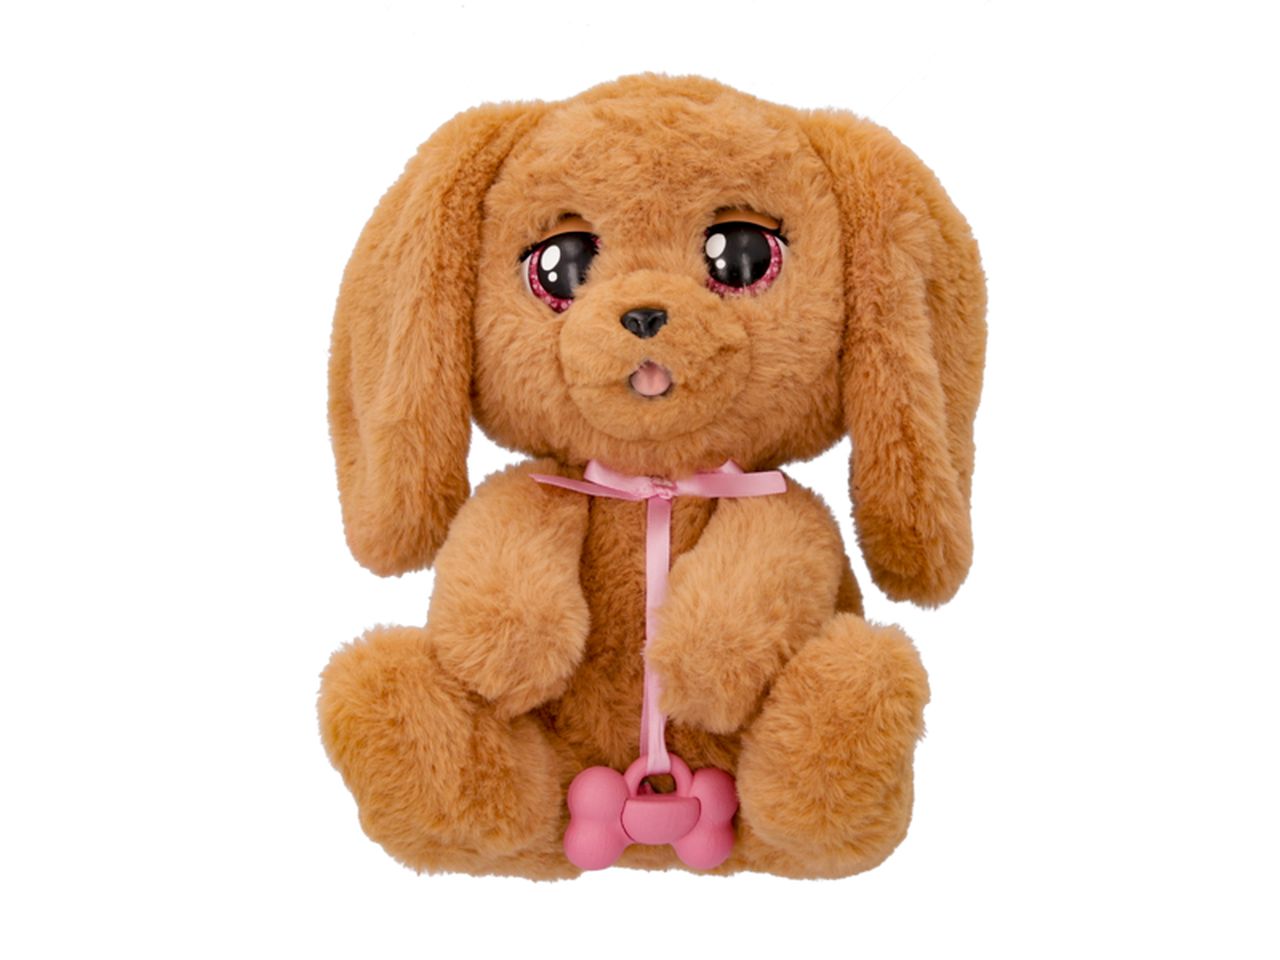 Cucciolo interattivo imc toys da bambina baby paws in 3 diversi assortimenti - la confezione contiene un ciuccio, una culla e una coperta-borsetta$